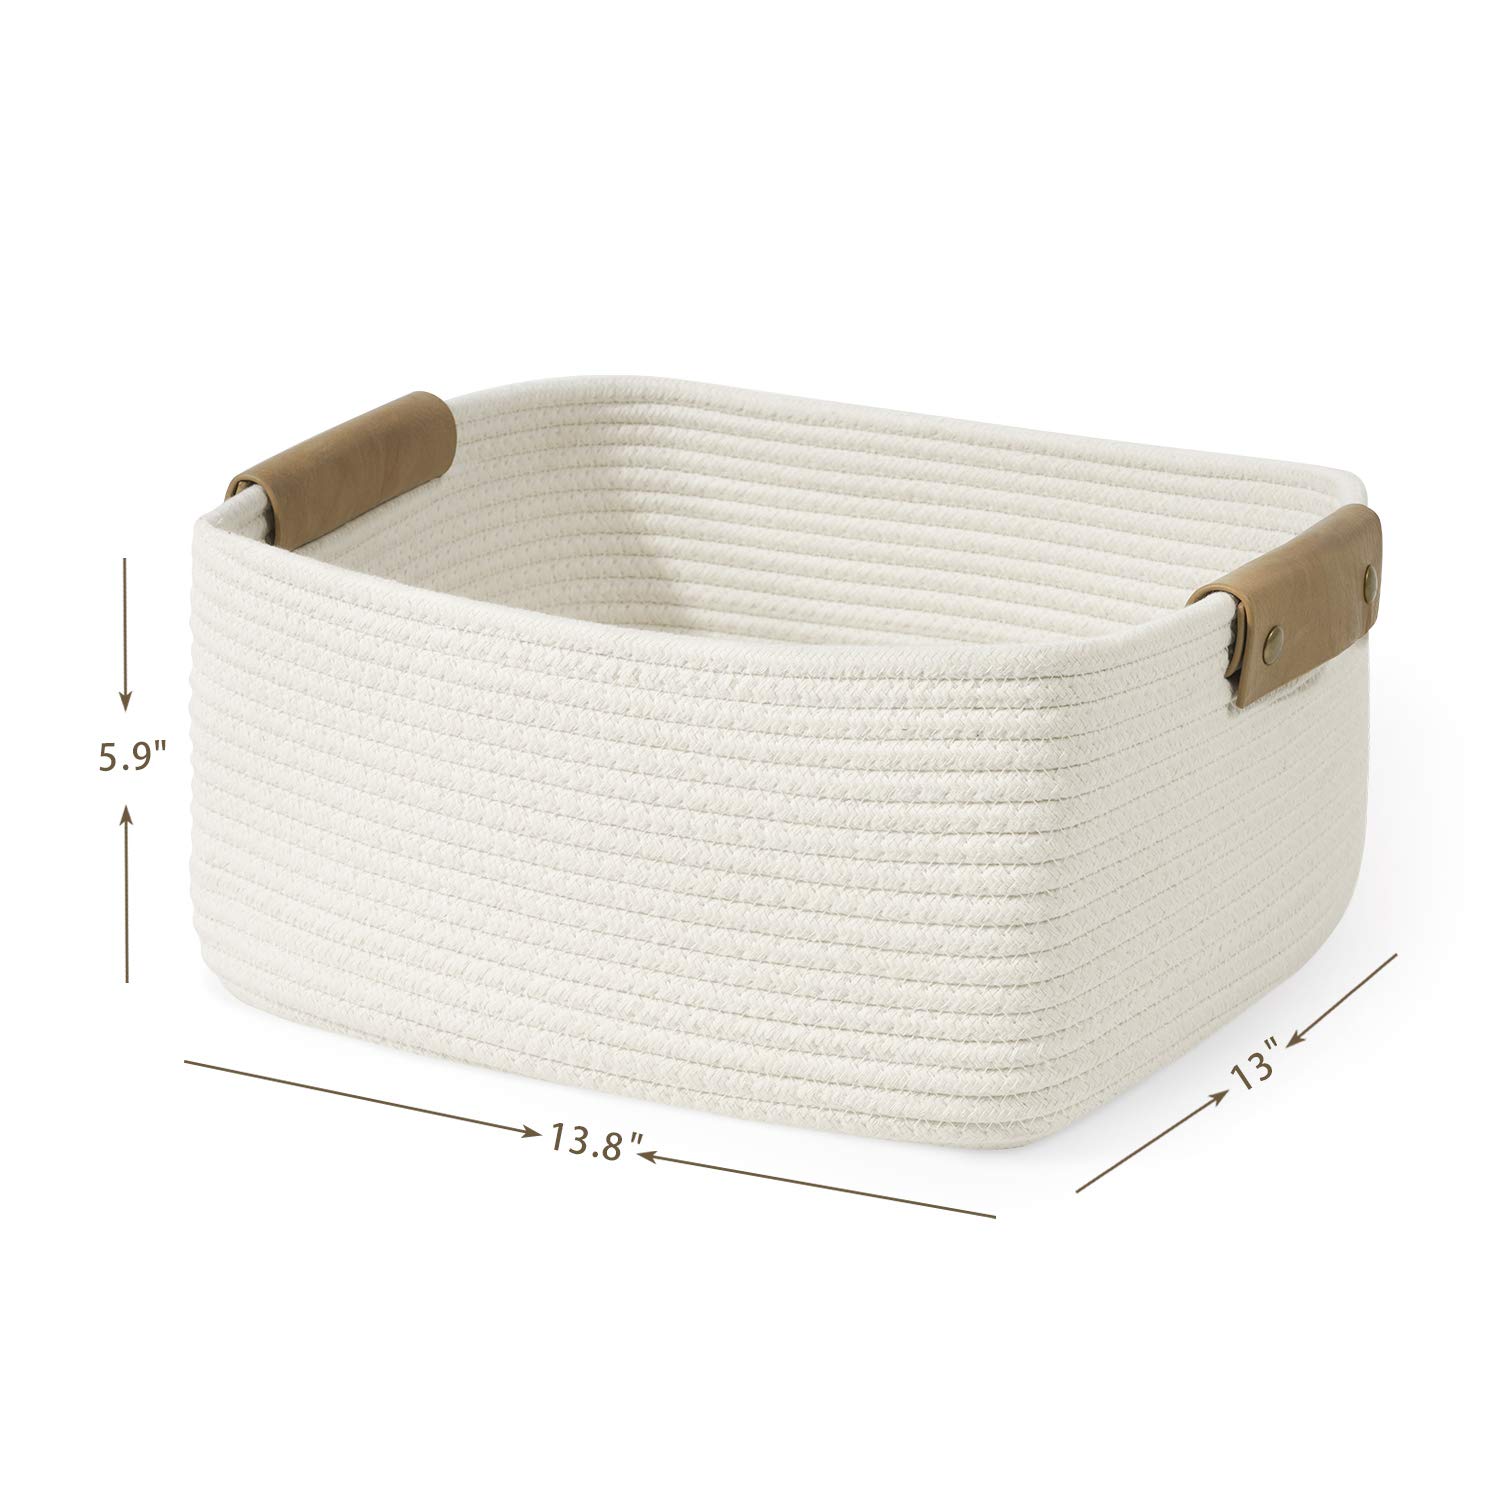 Large Cotton Rope Basket  Stylish Yarn Storage – Thread and Maple